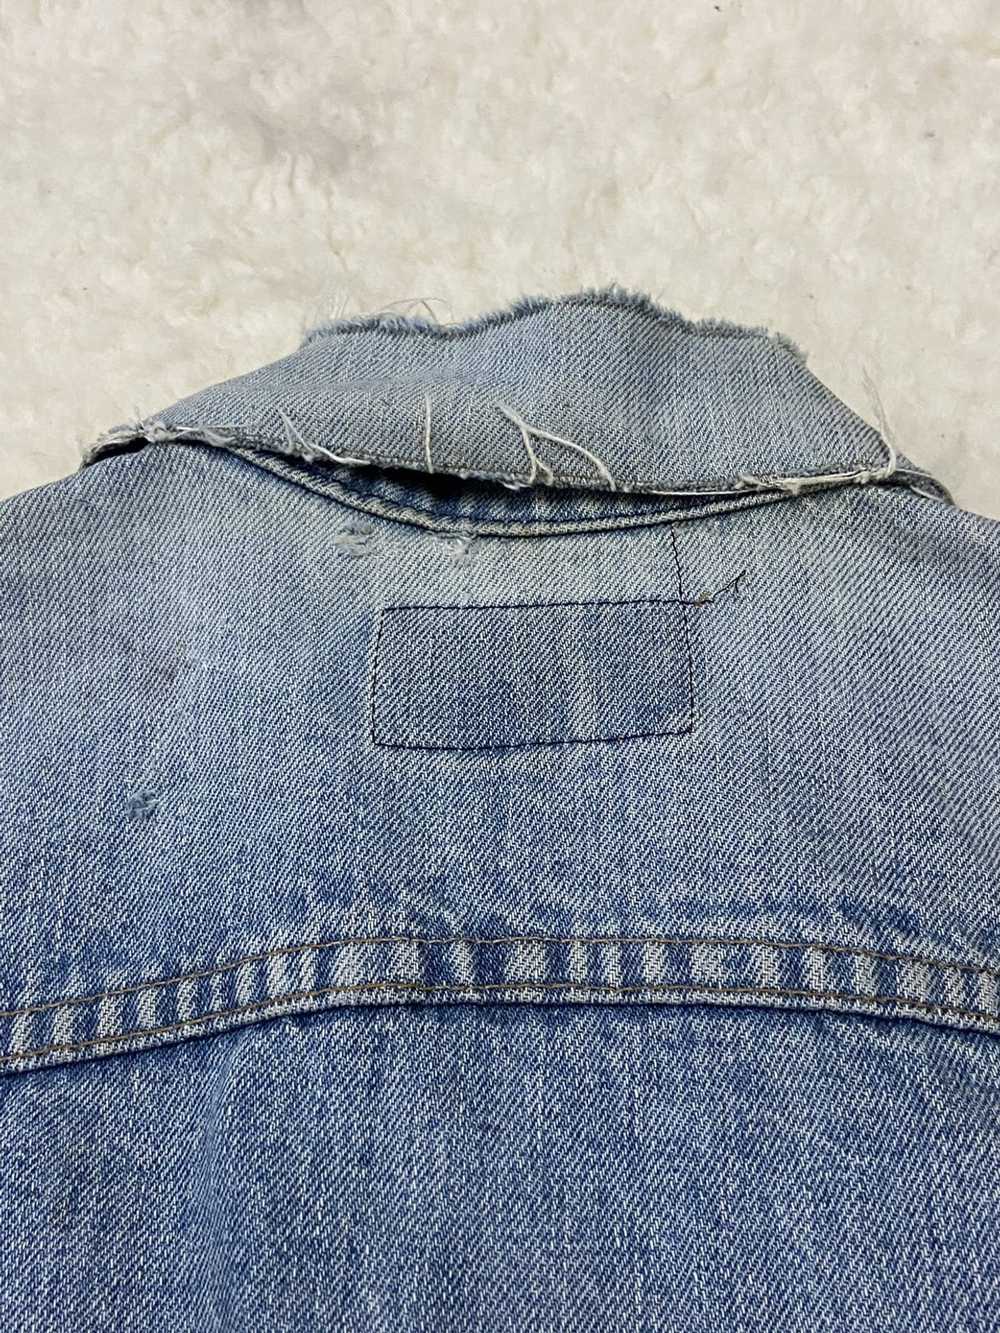 Levi's Vintage Clothing Type III Denim Jacket 705… - image 7